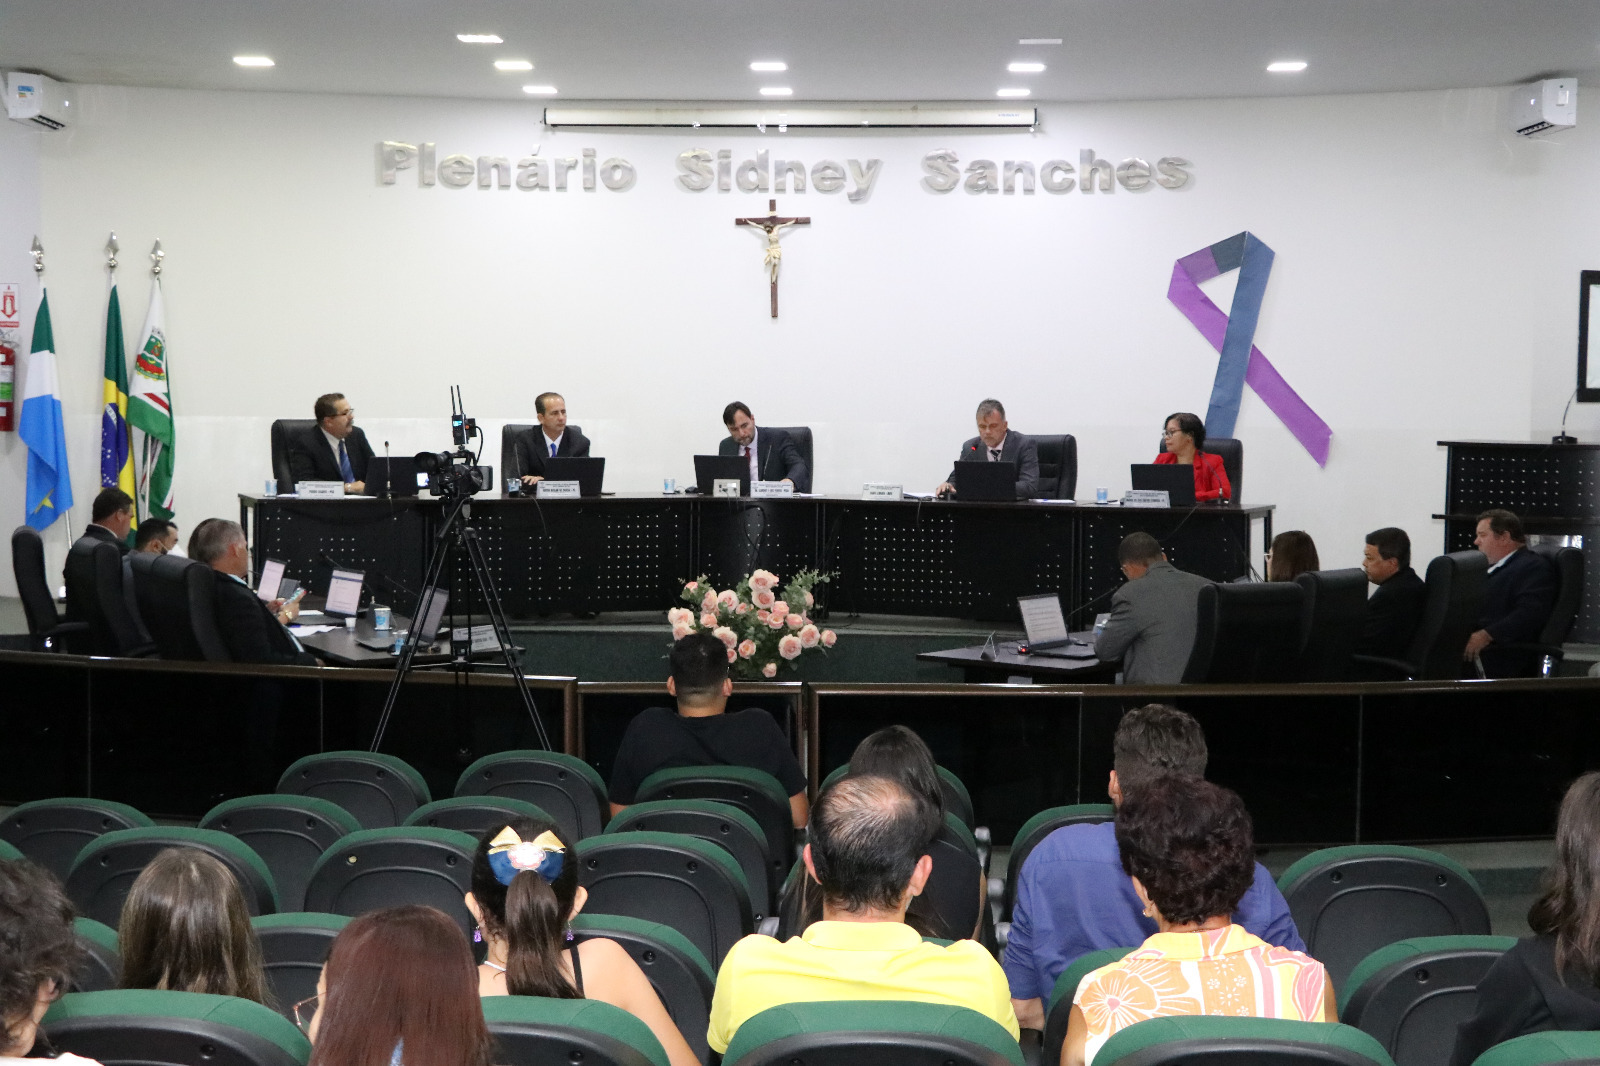 Reforma de unidade de saúde do Angico é cobrada em sessão 